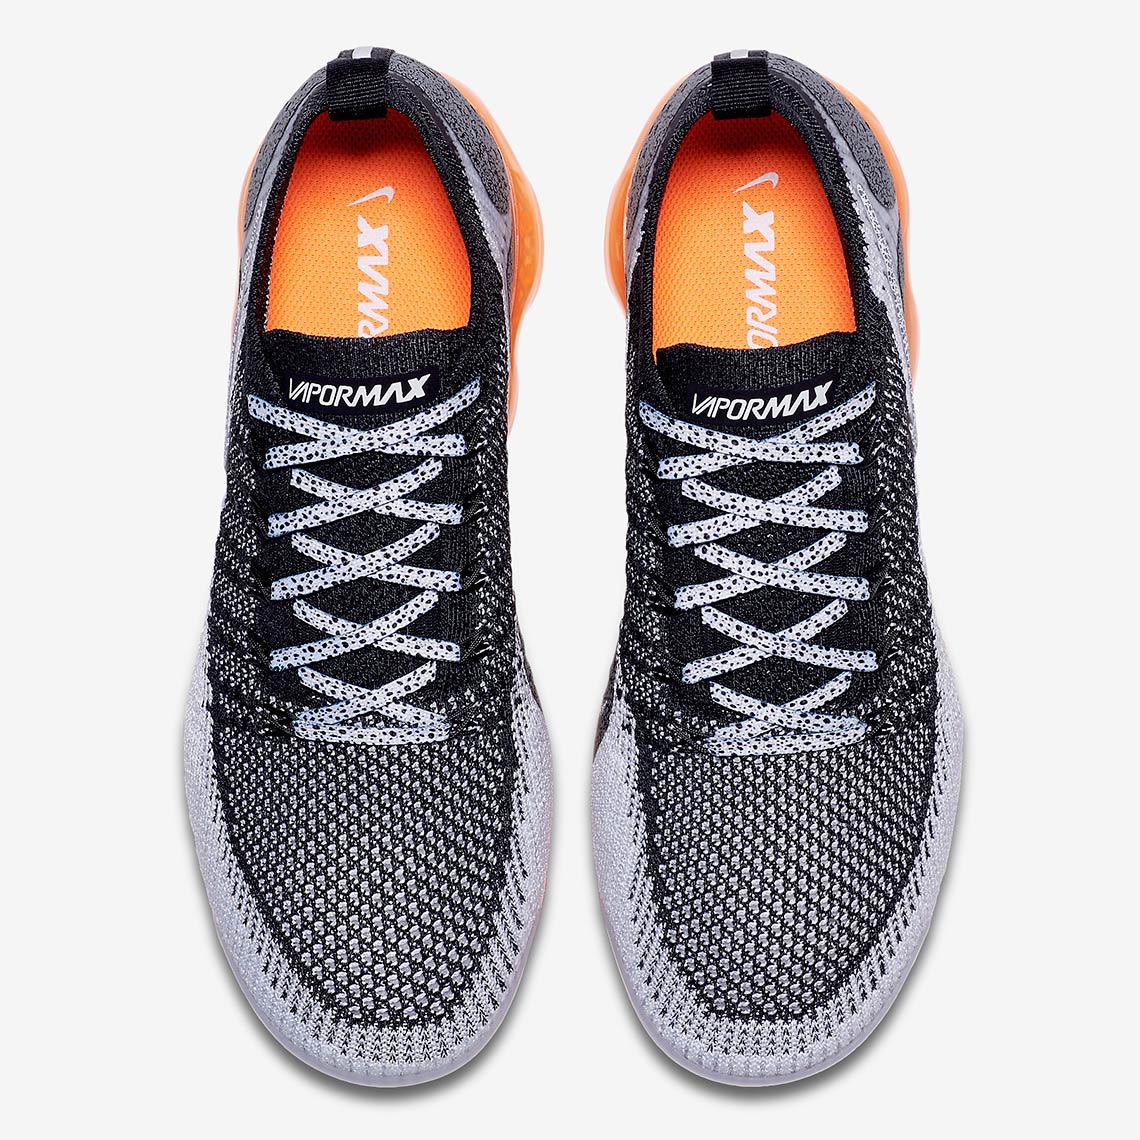 Nike Vapormax 2 Safari Release Date + Store Links | SneakerNews.com